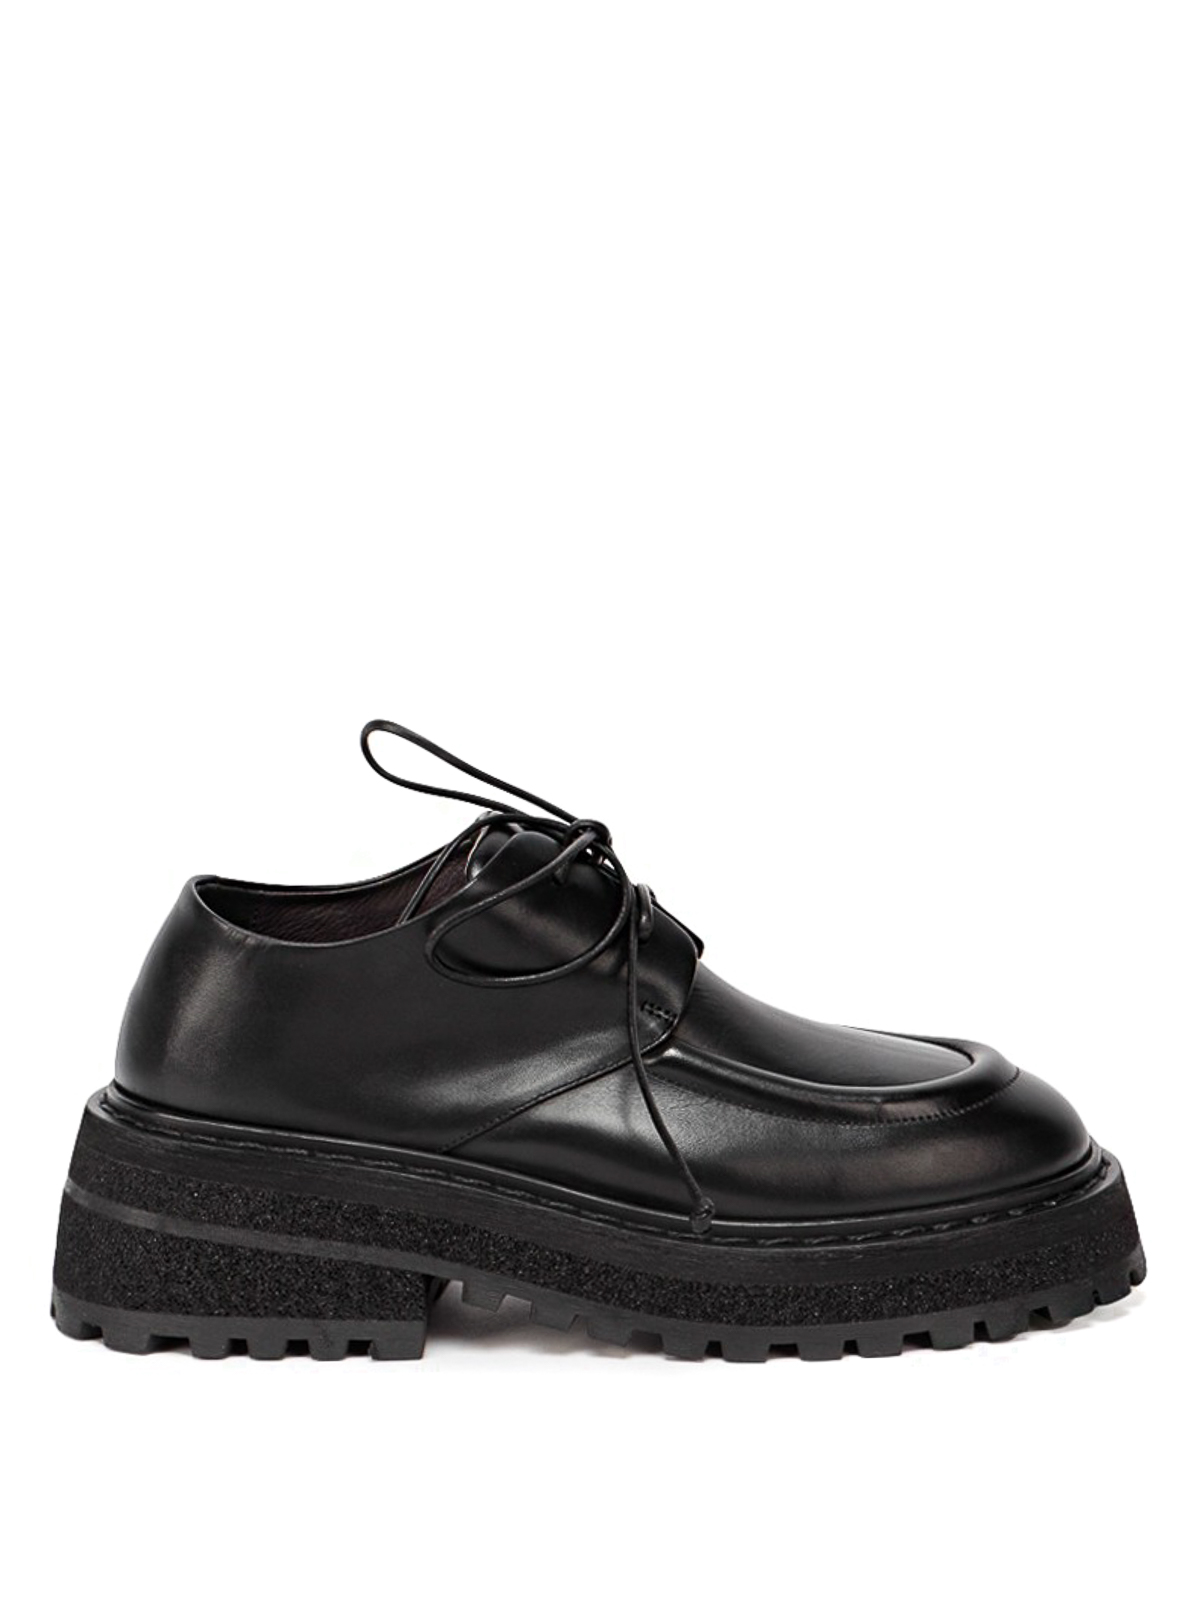 Marsèll Zapatos Con Cordones - Carro In Negro